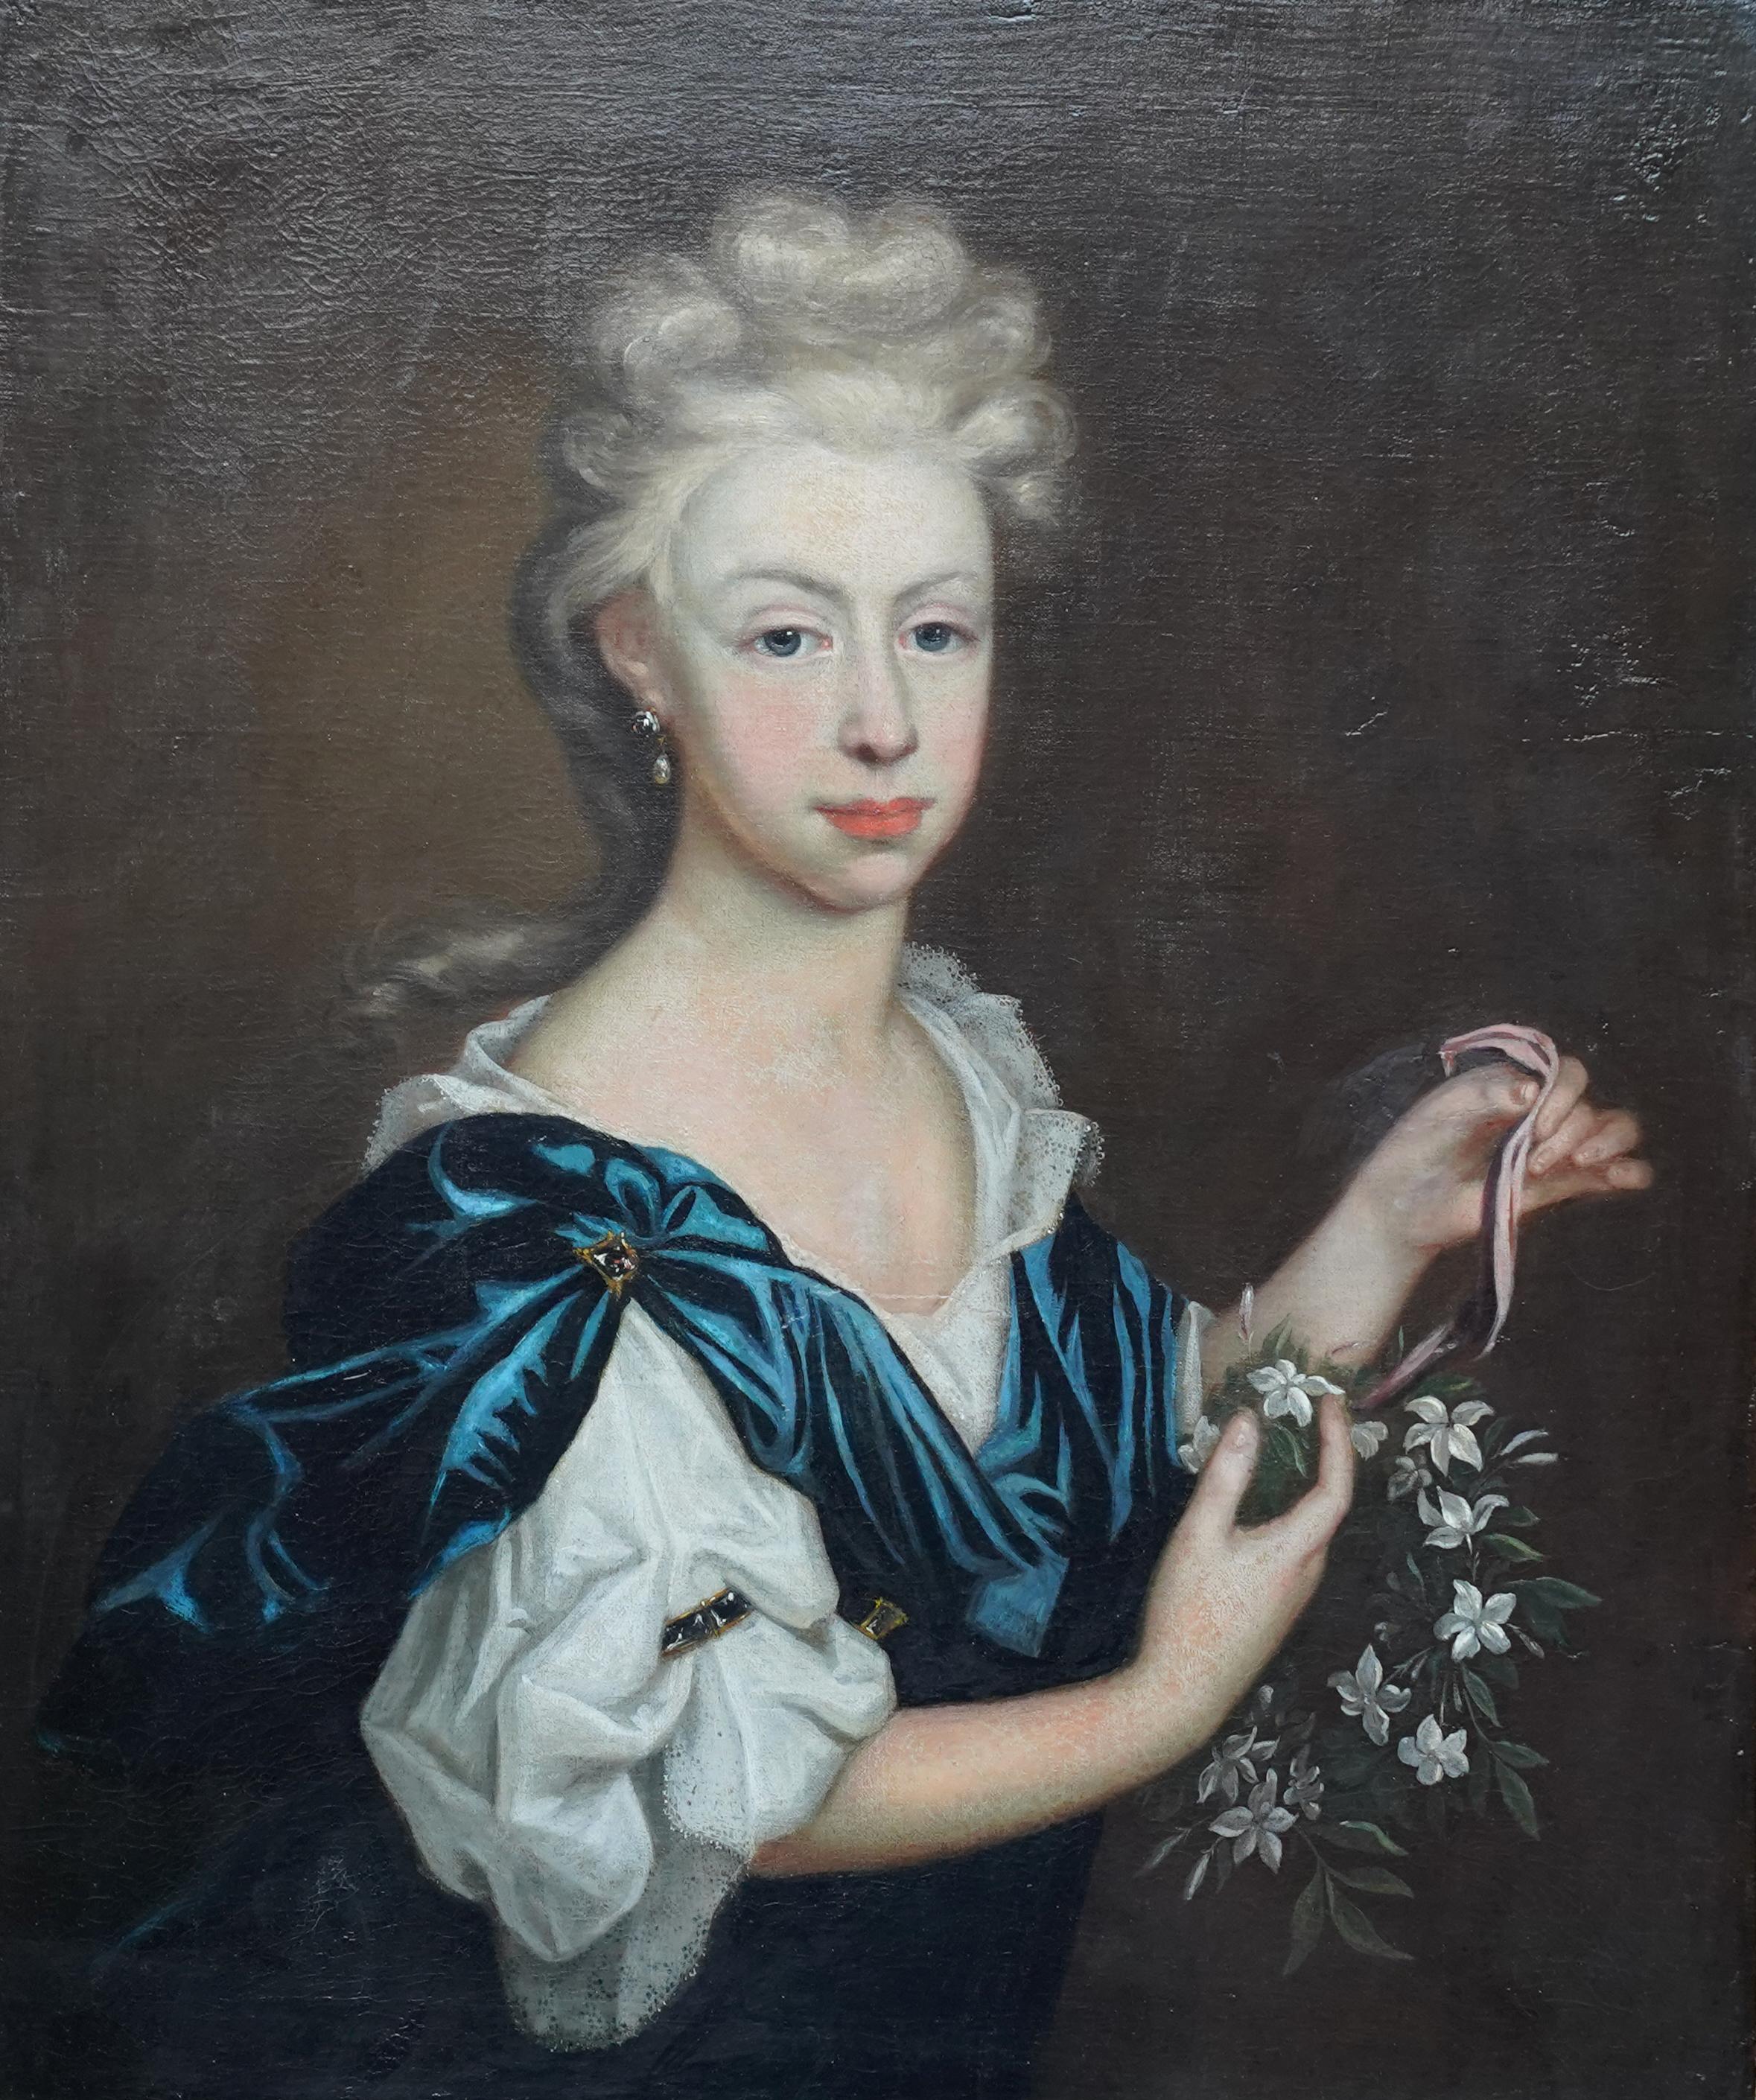 Portrait de femme avec une guirlande de fleurs - Peinture à l'huile de maître ancien britannique du 17ème siècle - Painting de Michael Dahl